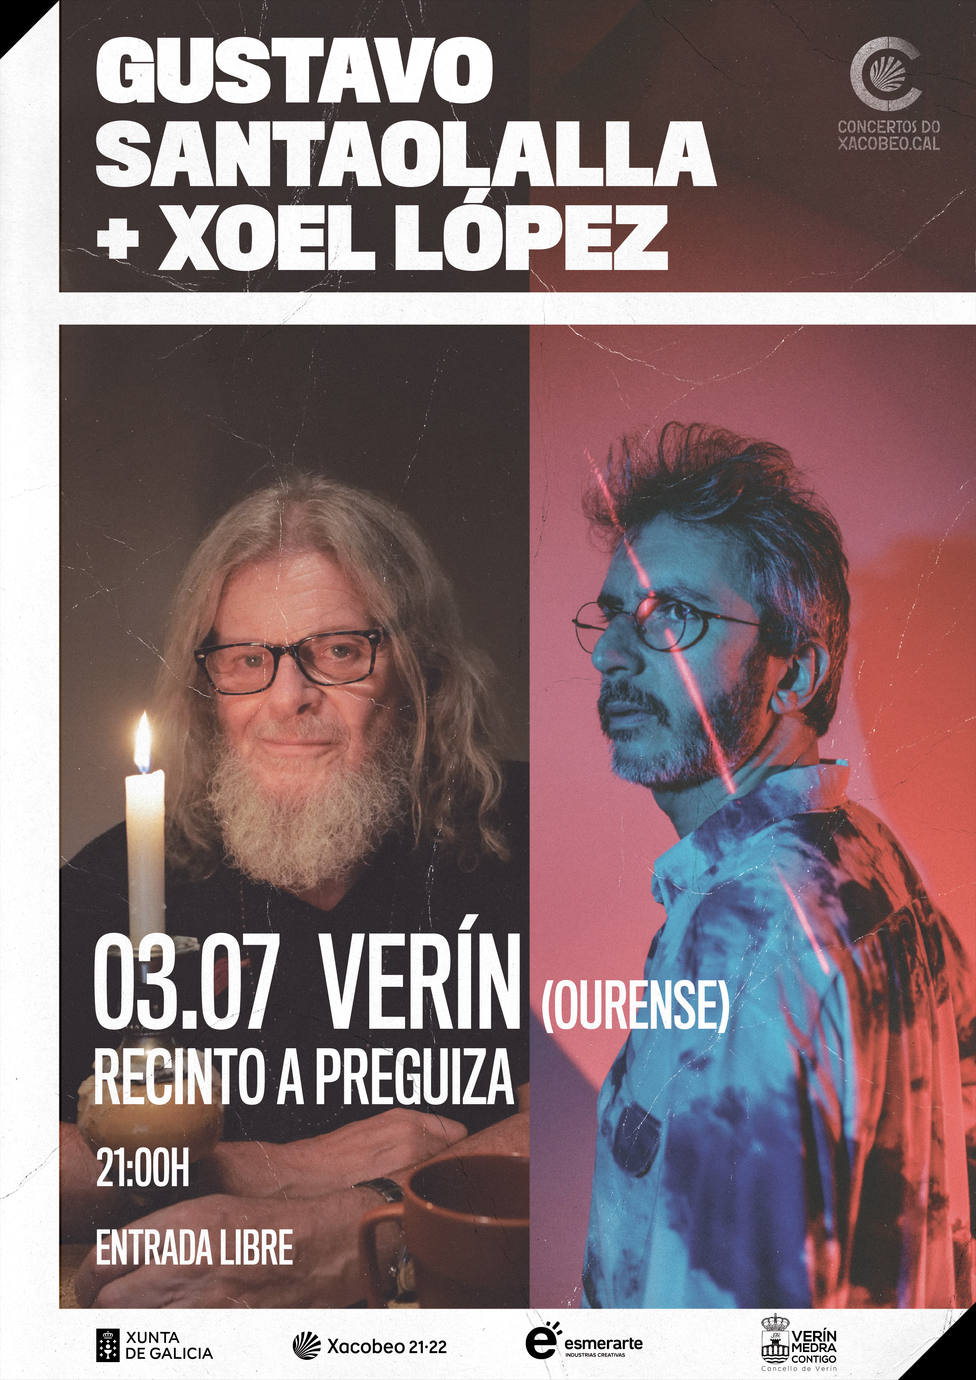 Cartel anunciador de los conciertos de Xoel López y Gustavo Santaolalla